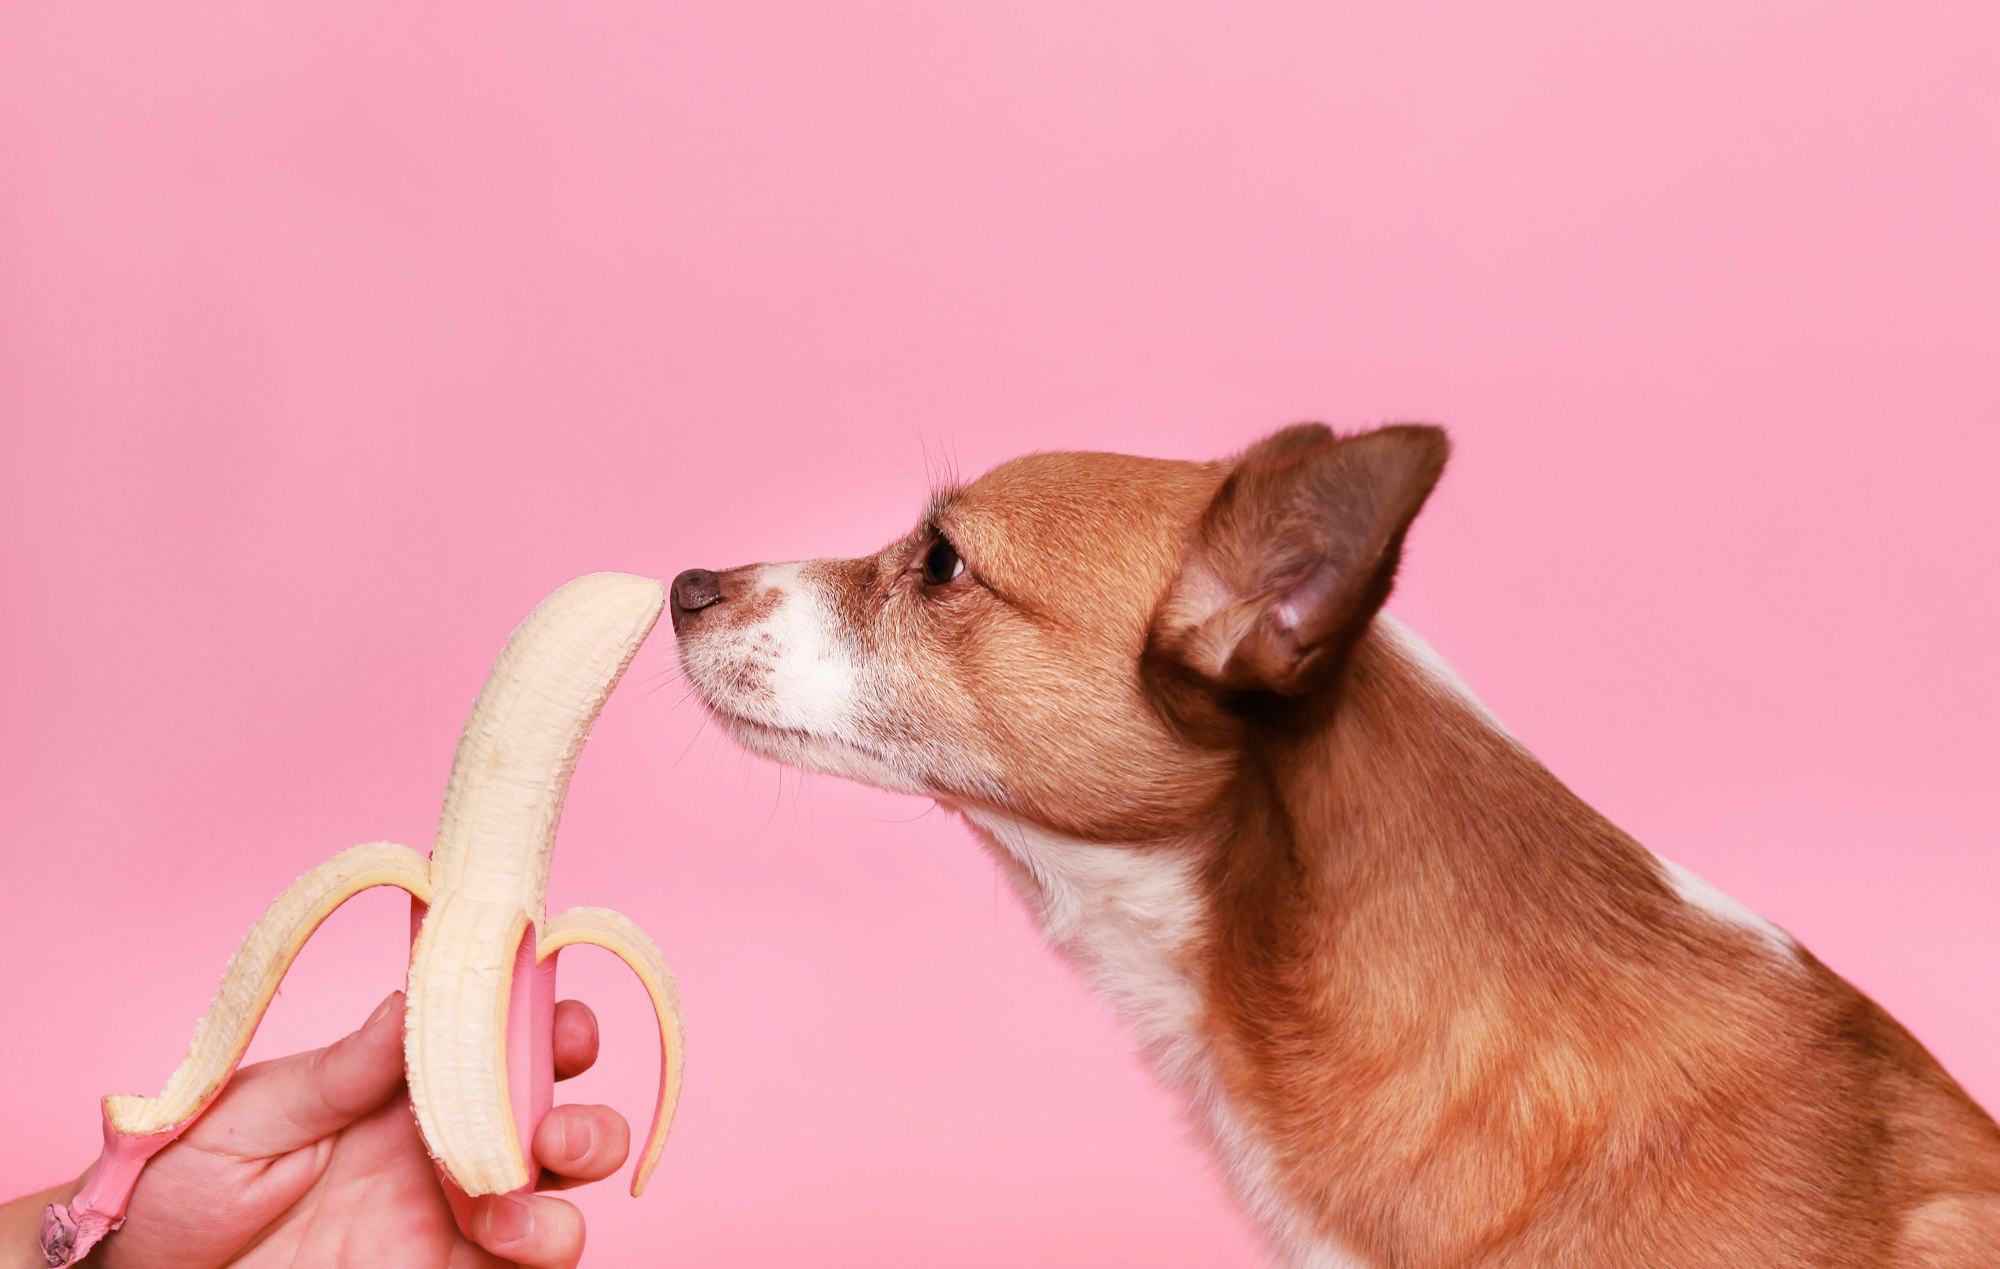 Banana for dog